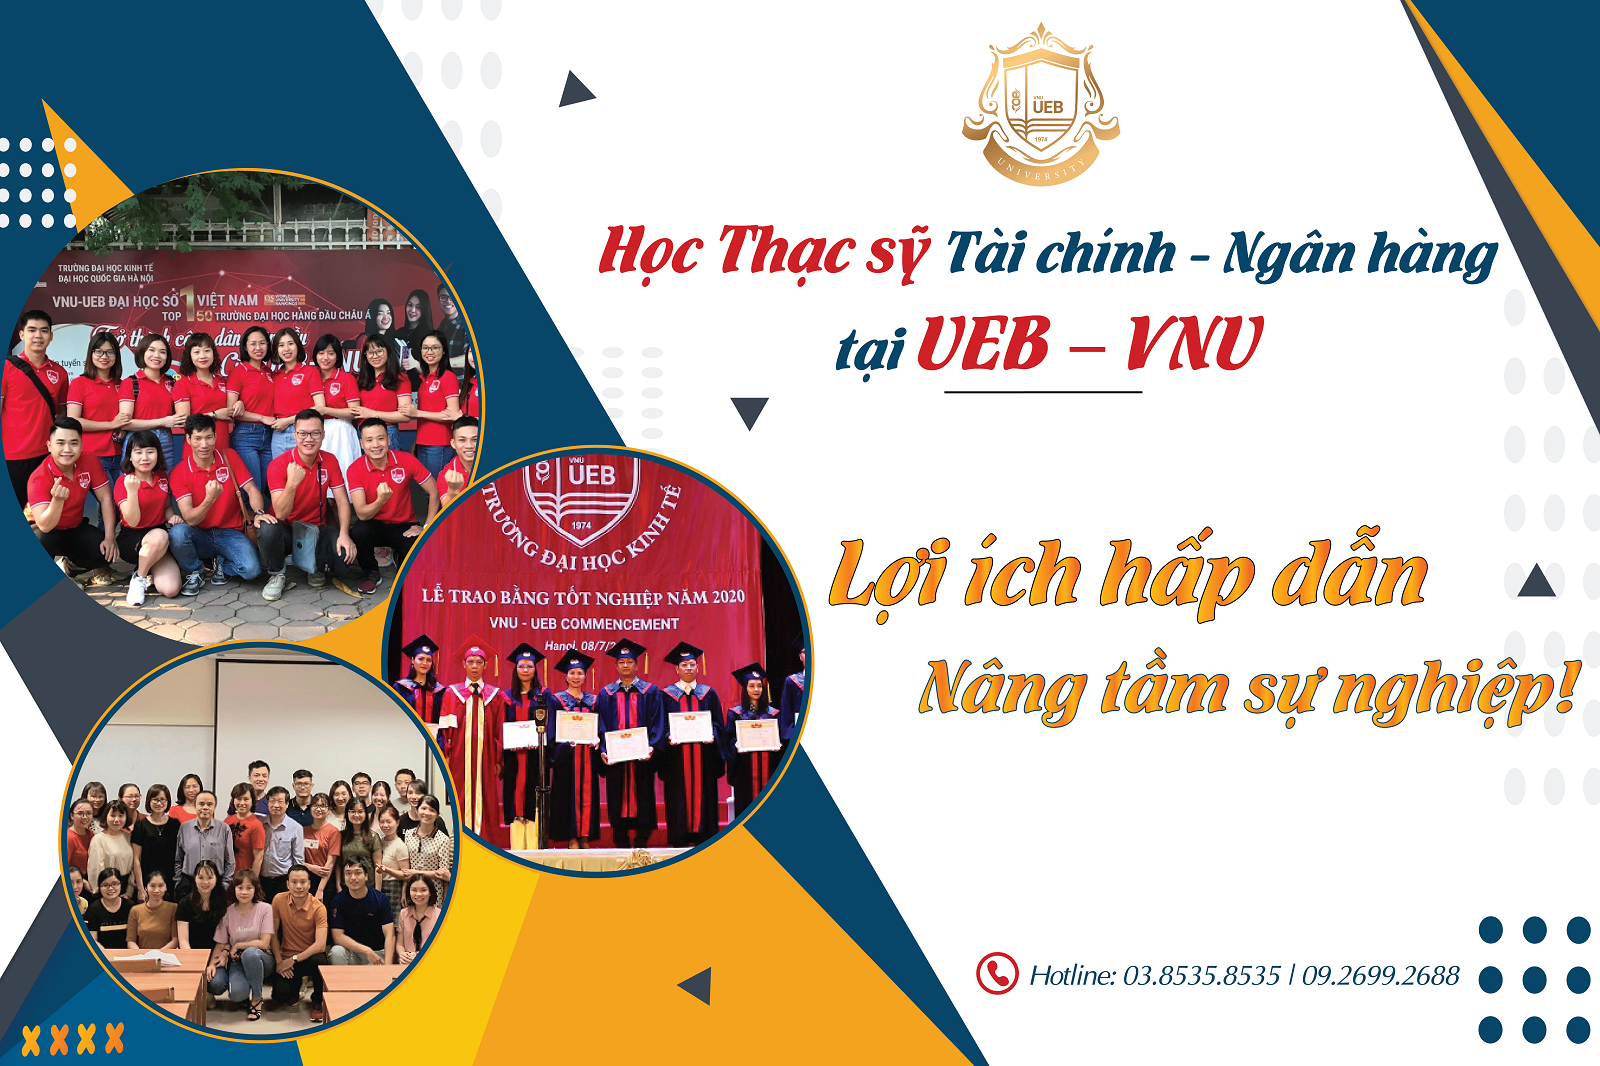 Học thạc sĩ Tài chính - Ngân hàng tại UEB – VNU: Lợi ích hấp dẫn, nâng tầm sự nghiệp!